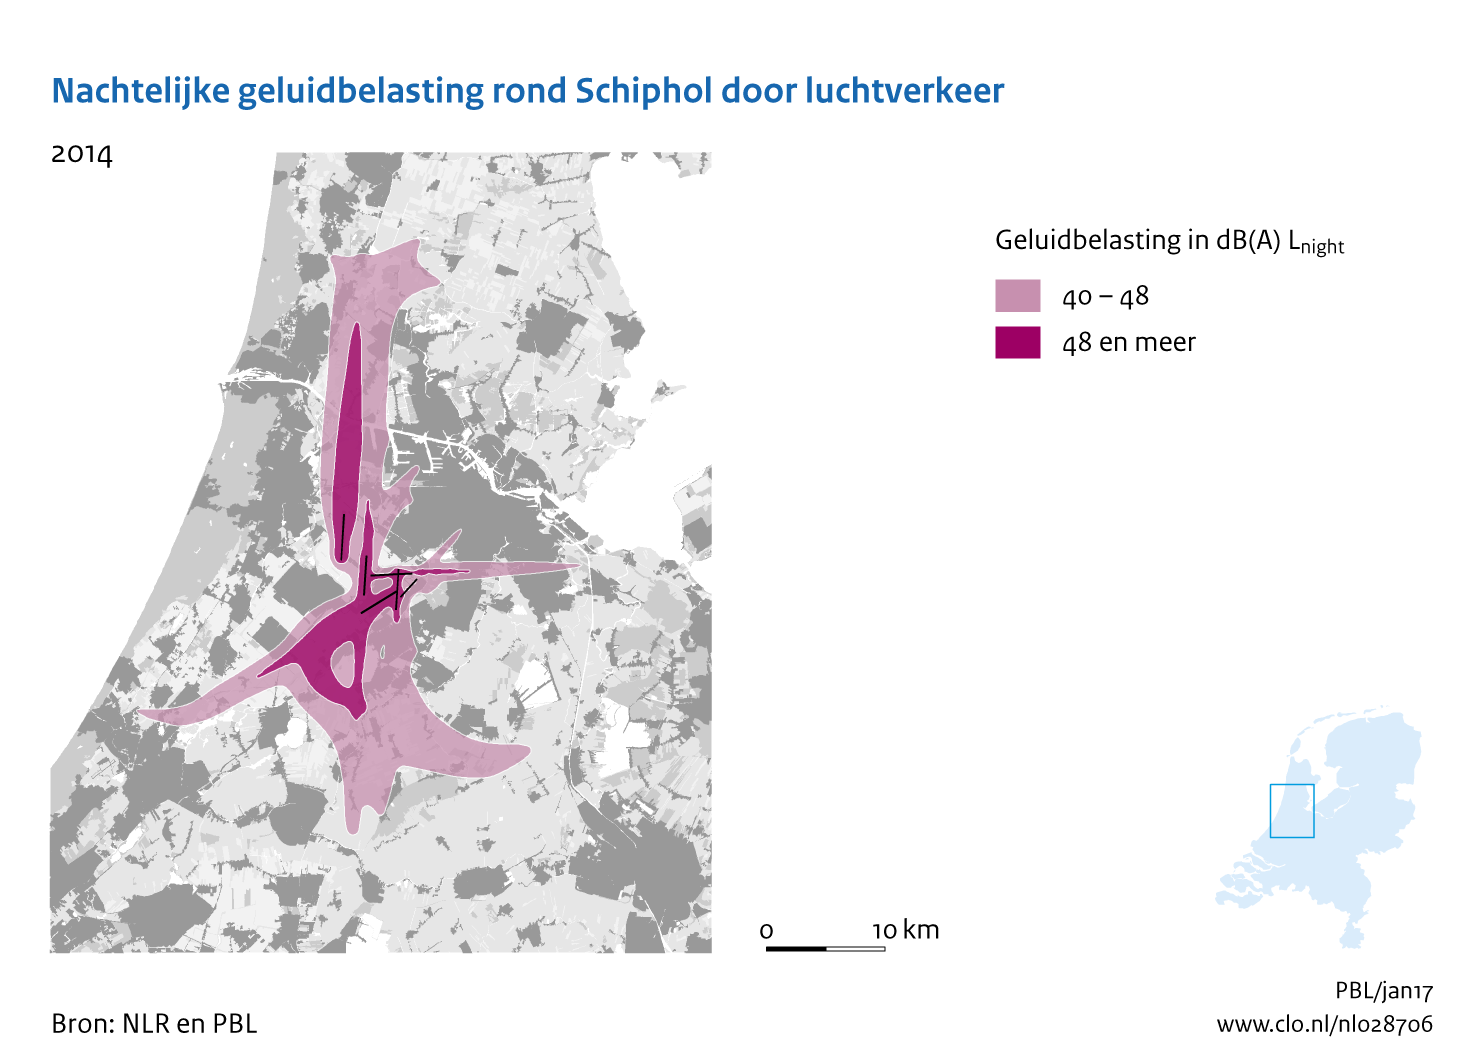 Figuur Nachtelijke geluidbelasting rond Schiphol door luchtverkeer, 2014. In de rest van de tekst wordt deze figuur uitgebreider uitgelegd.